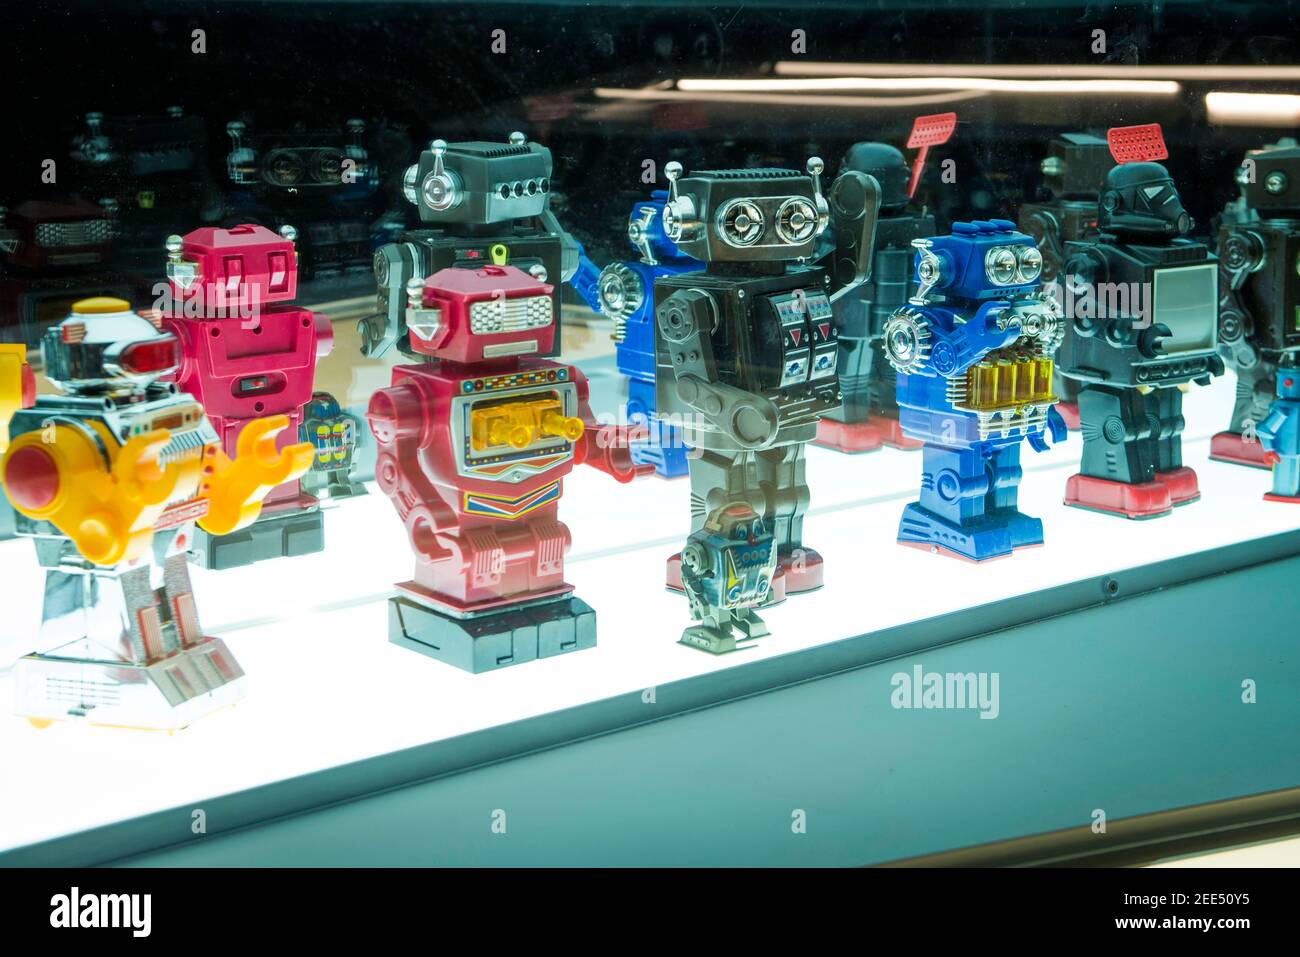 Robot giocattolo giapponesi in mostra alla mostra Into the Unknown: A Journey through Science Fiction, al Barbican, Londra. Data immagine: Giovedì 1 giugno 2017. Il credito fotografico dovrebbe essere: © DavidJensen/EMPICS Entertainment Foto Stock